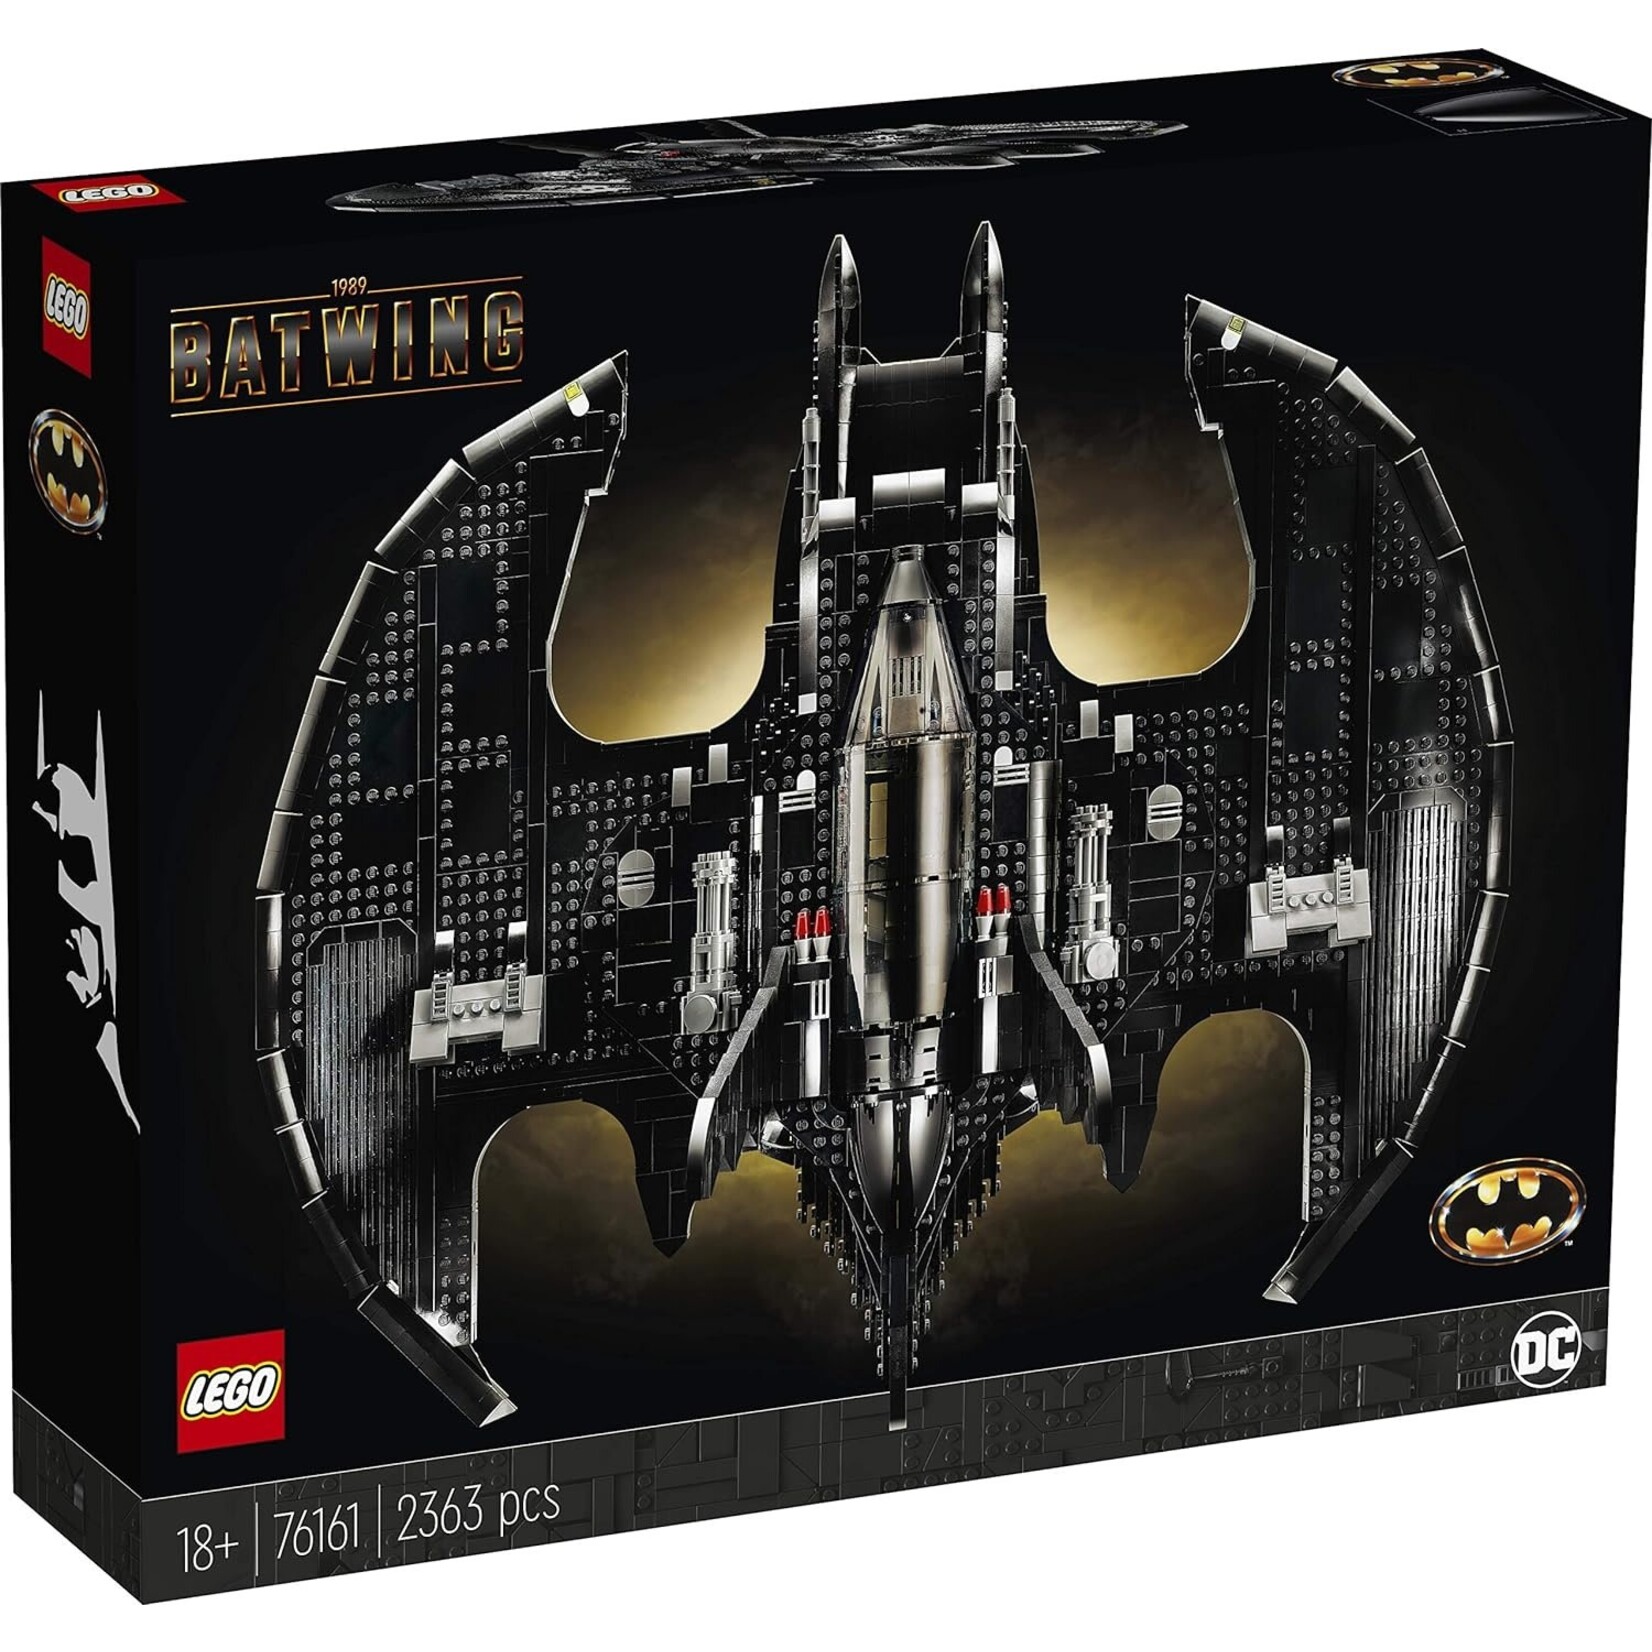 LEGO LEGO 1989 Batwing 76161